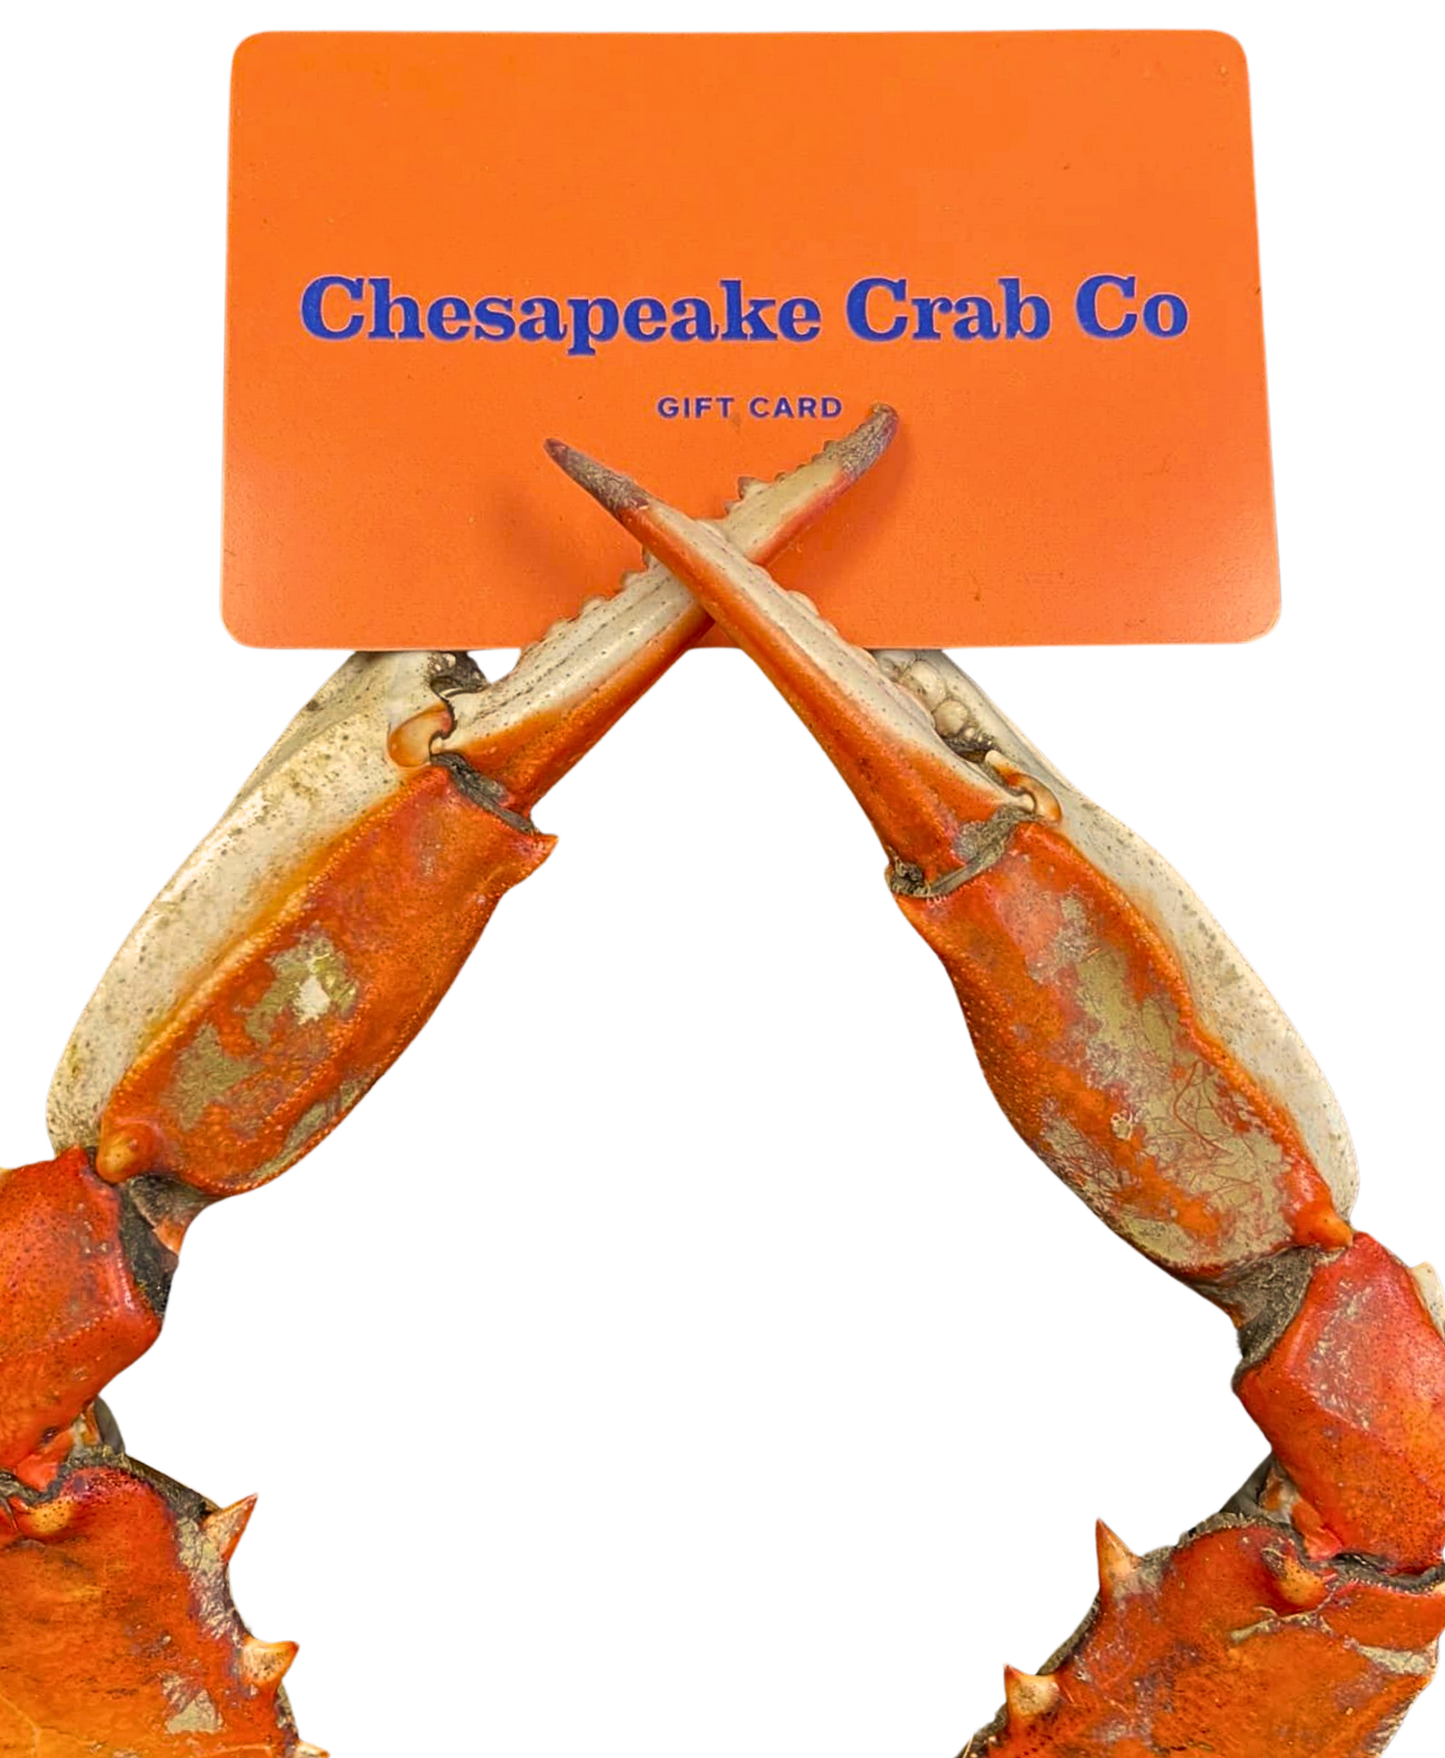 Chesapeake Crab Co. Gift Card